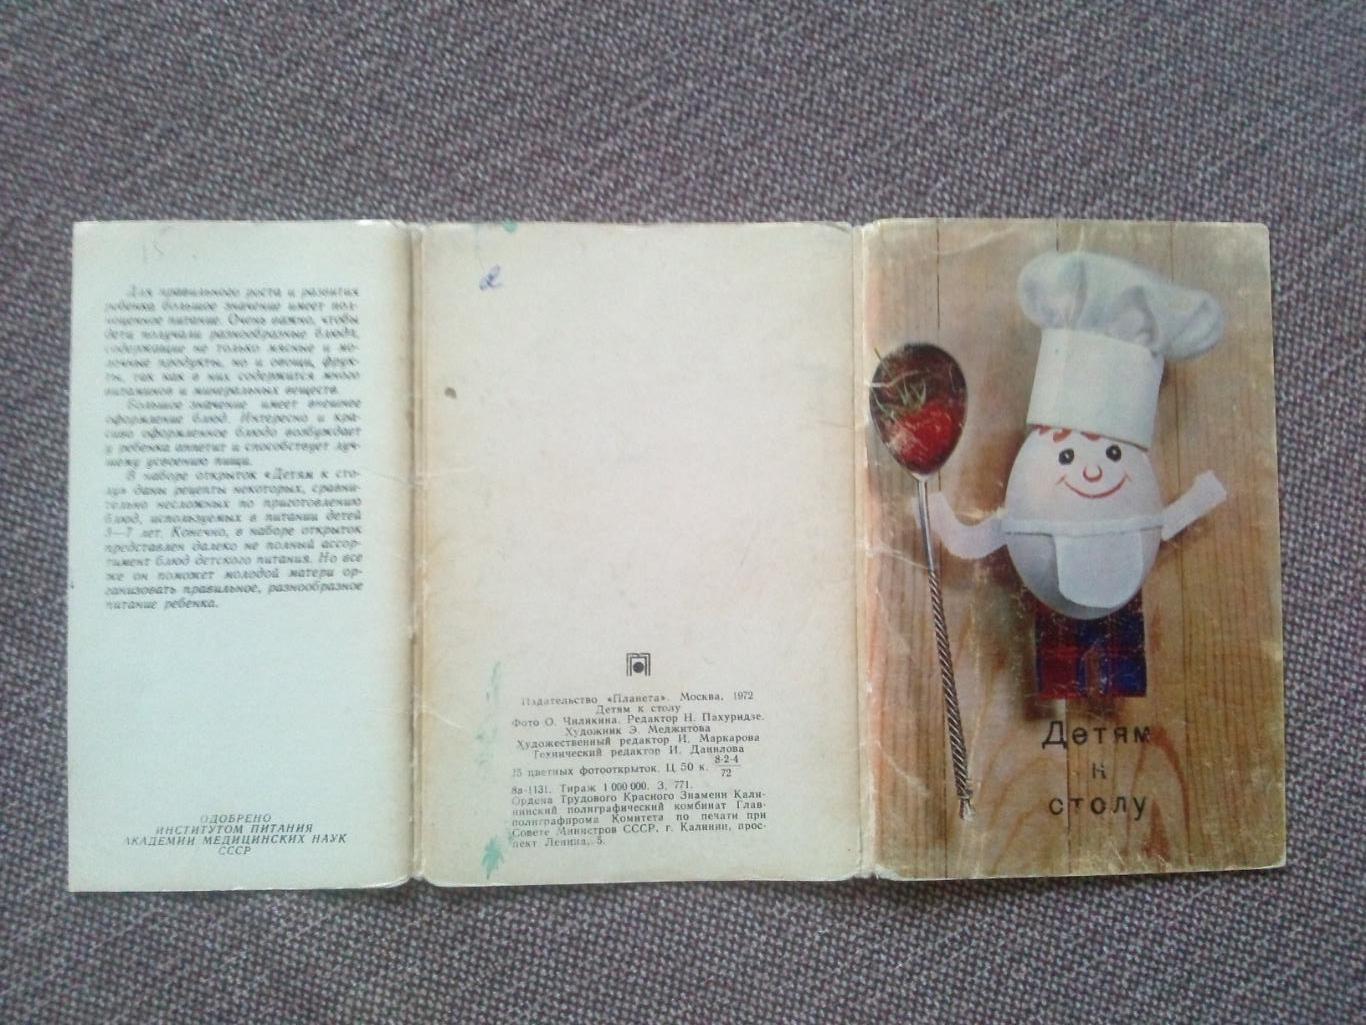 Детям к столу 1972 г. полный набор - 15 открыток (кулинарные рецепты) Кулинария 1